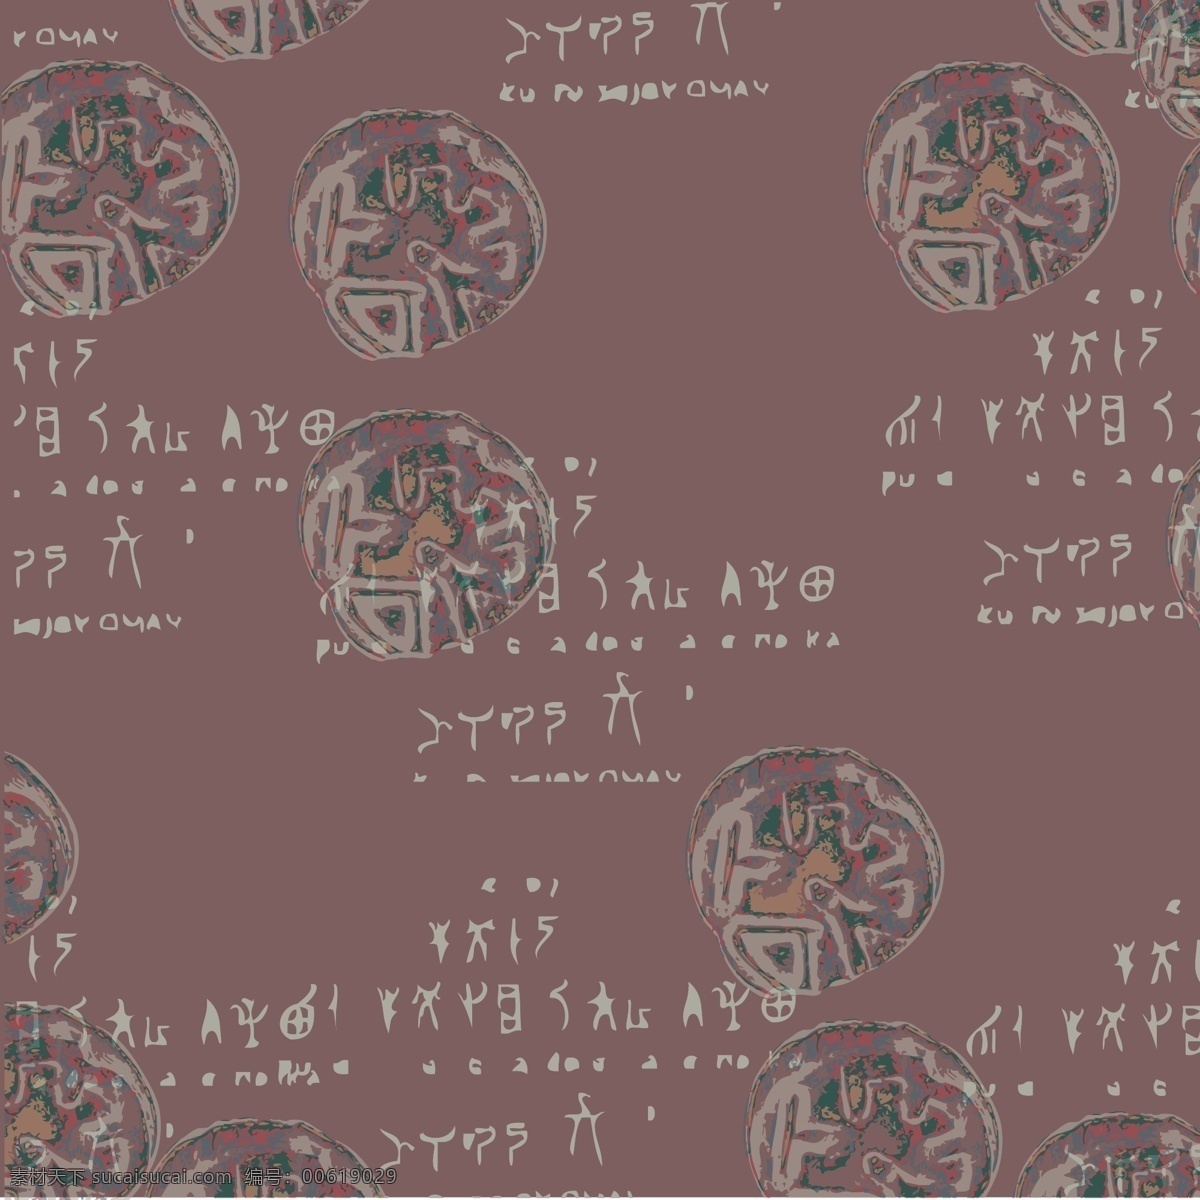 史前 文化 远古 文 字体 矢量图 文字体 底纹边框 背景底纹